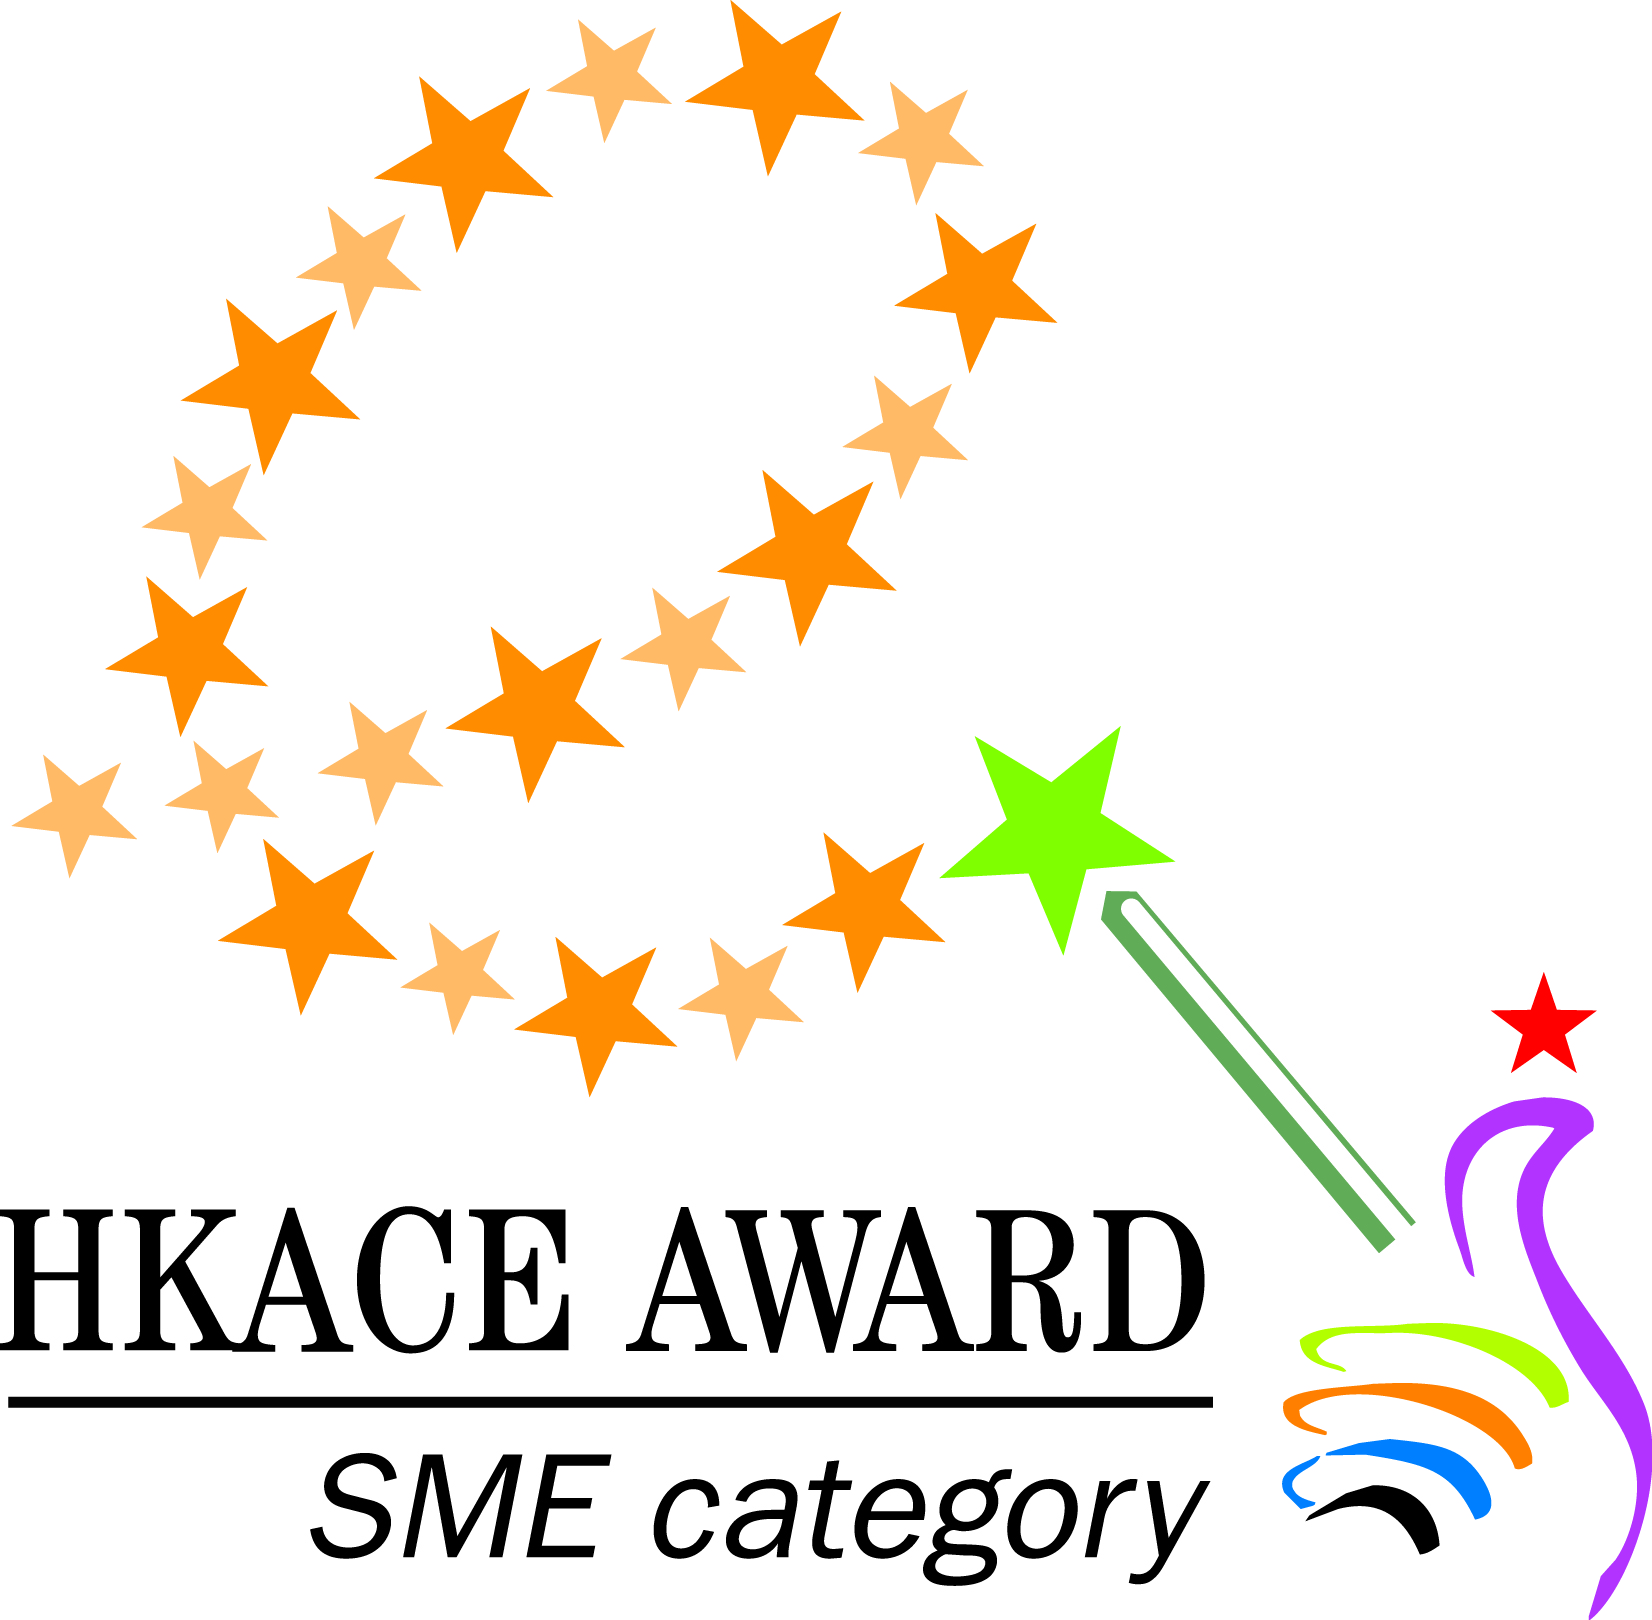 HKACE Award